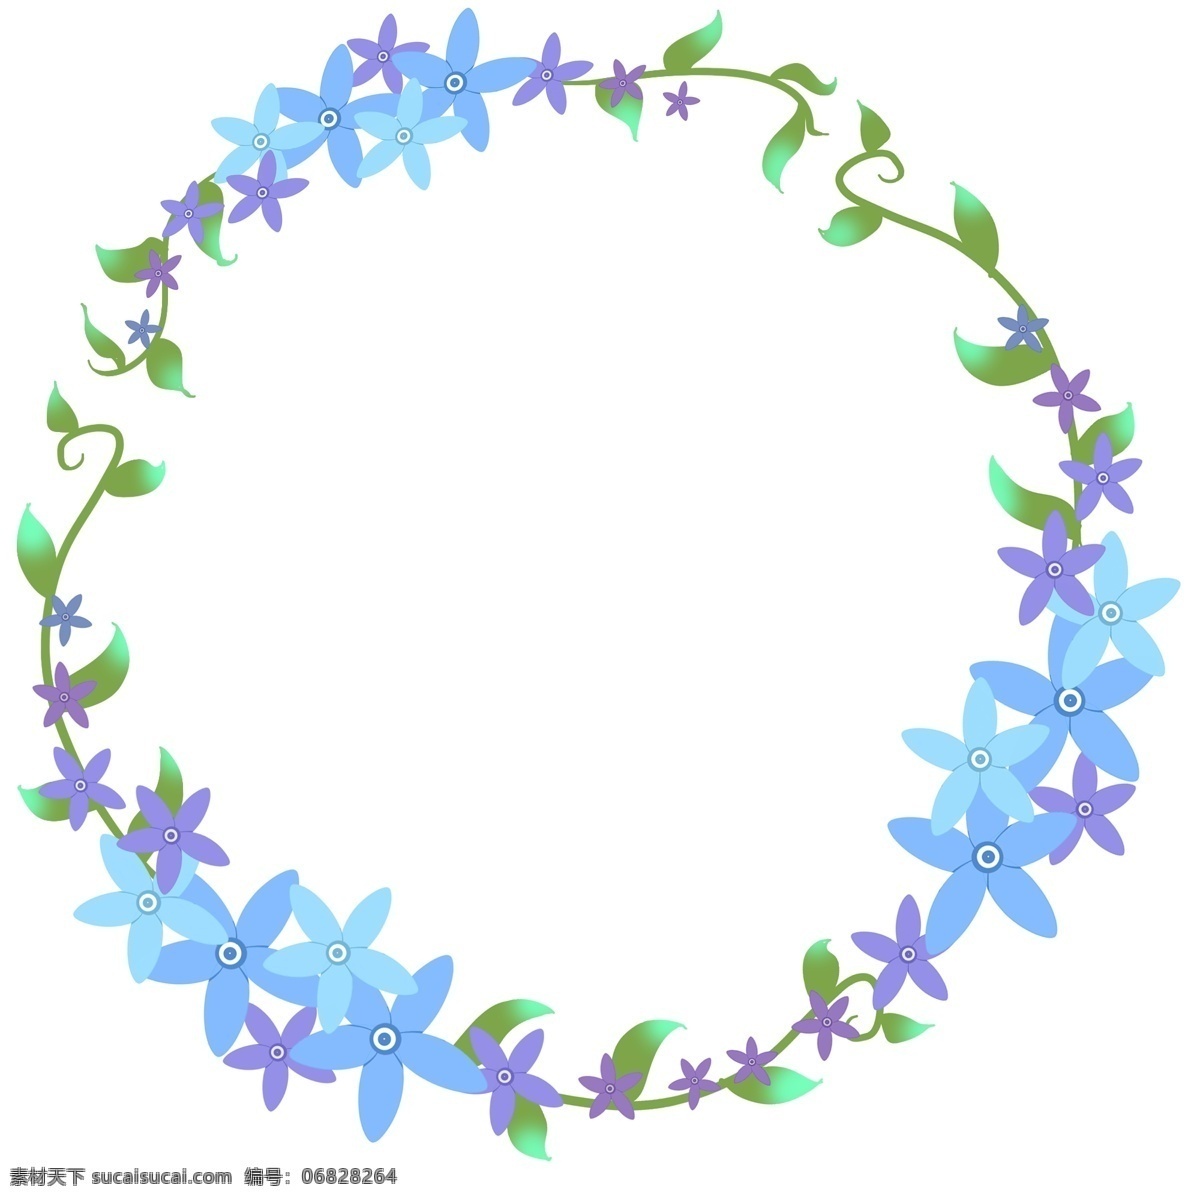 蓝色 花朵 边框 插画 春天 植物圆形边框 蓝色花朵边框 边框插图 花环装饰边框 春季花环插画